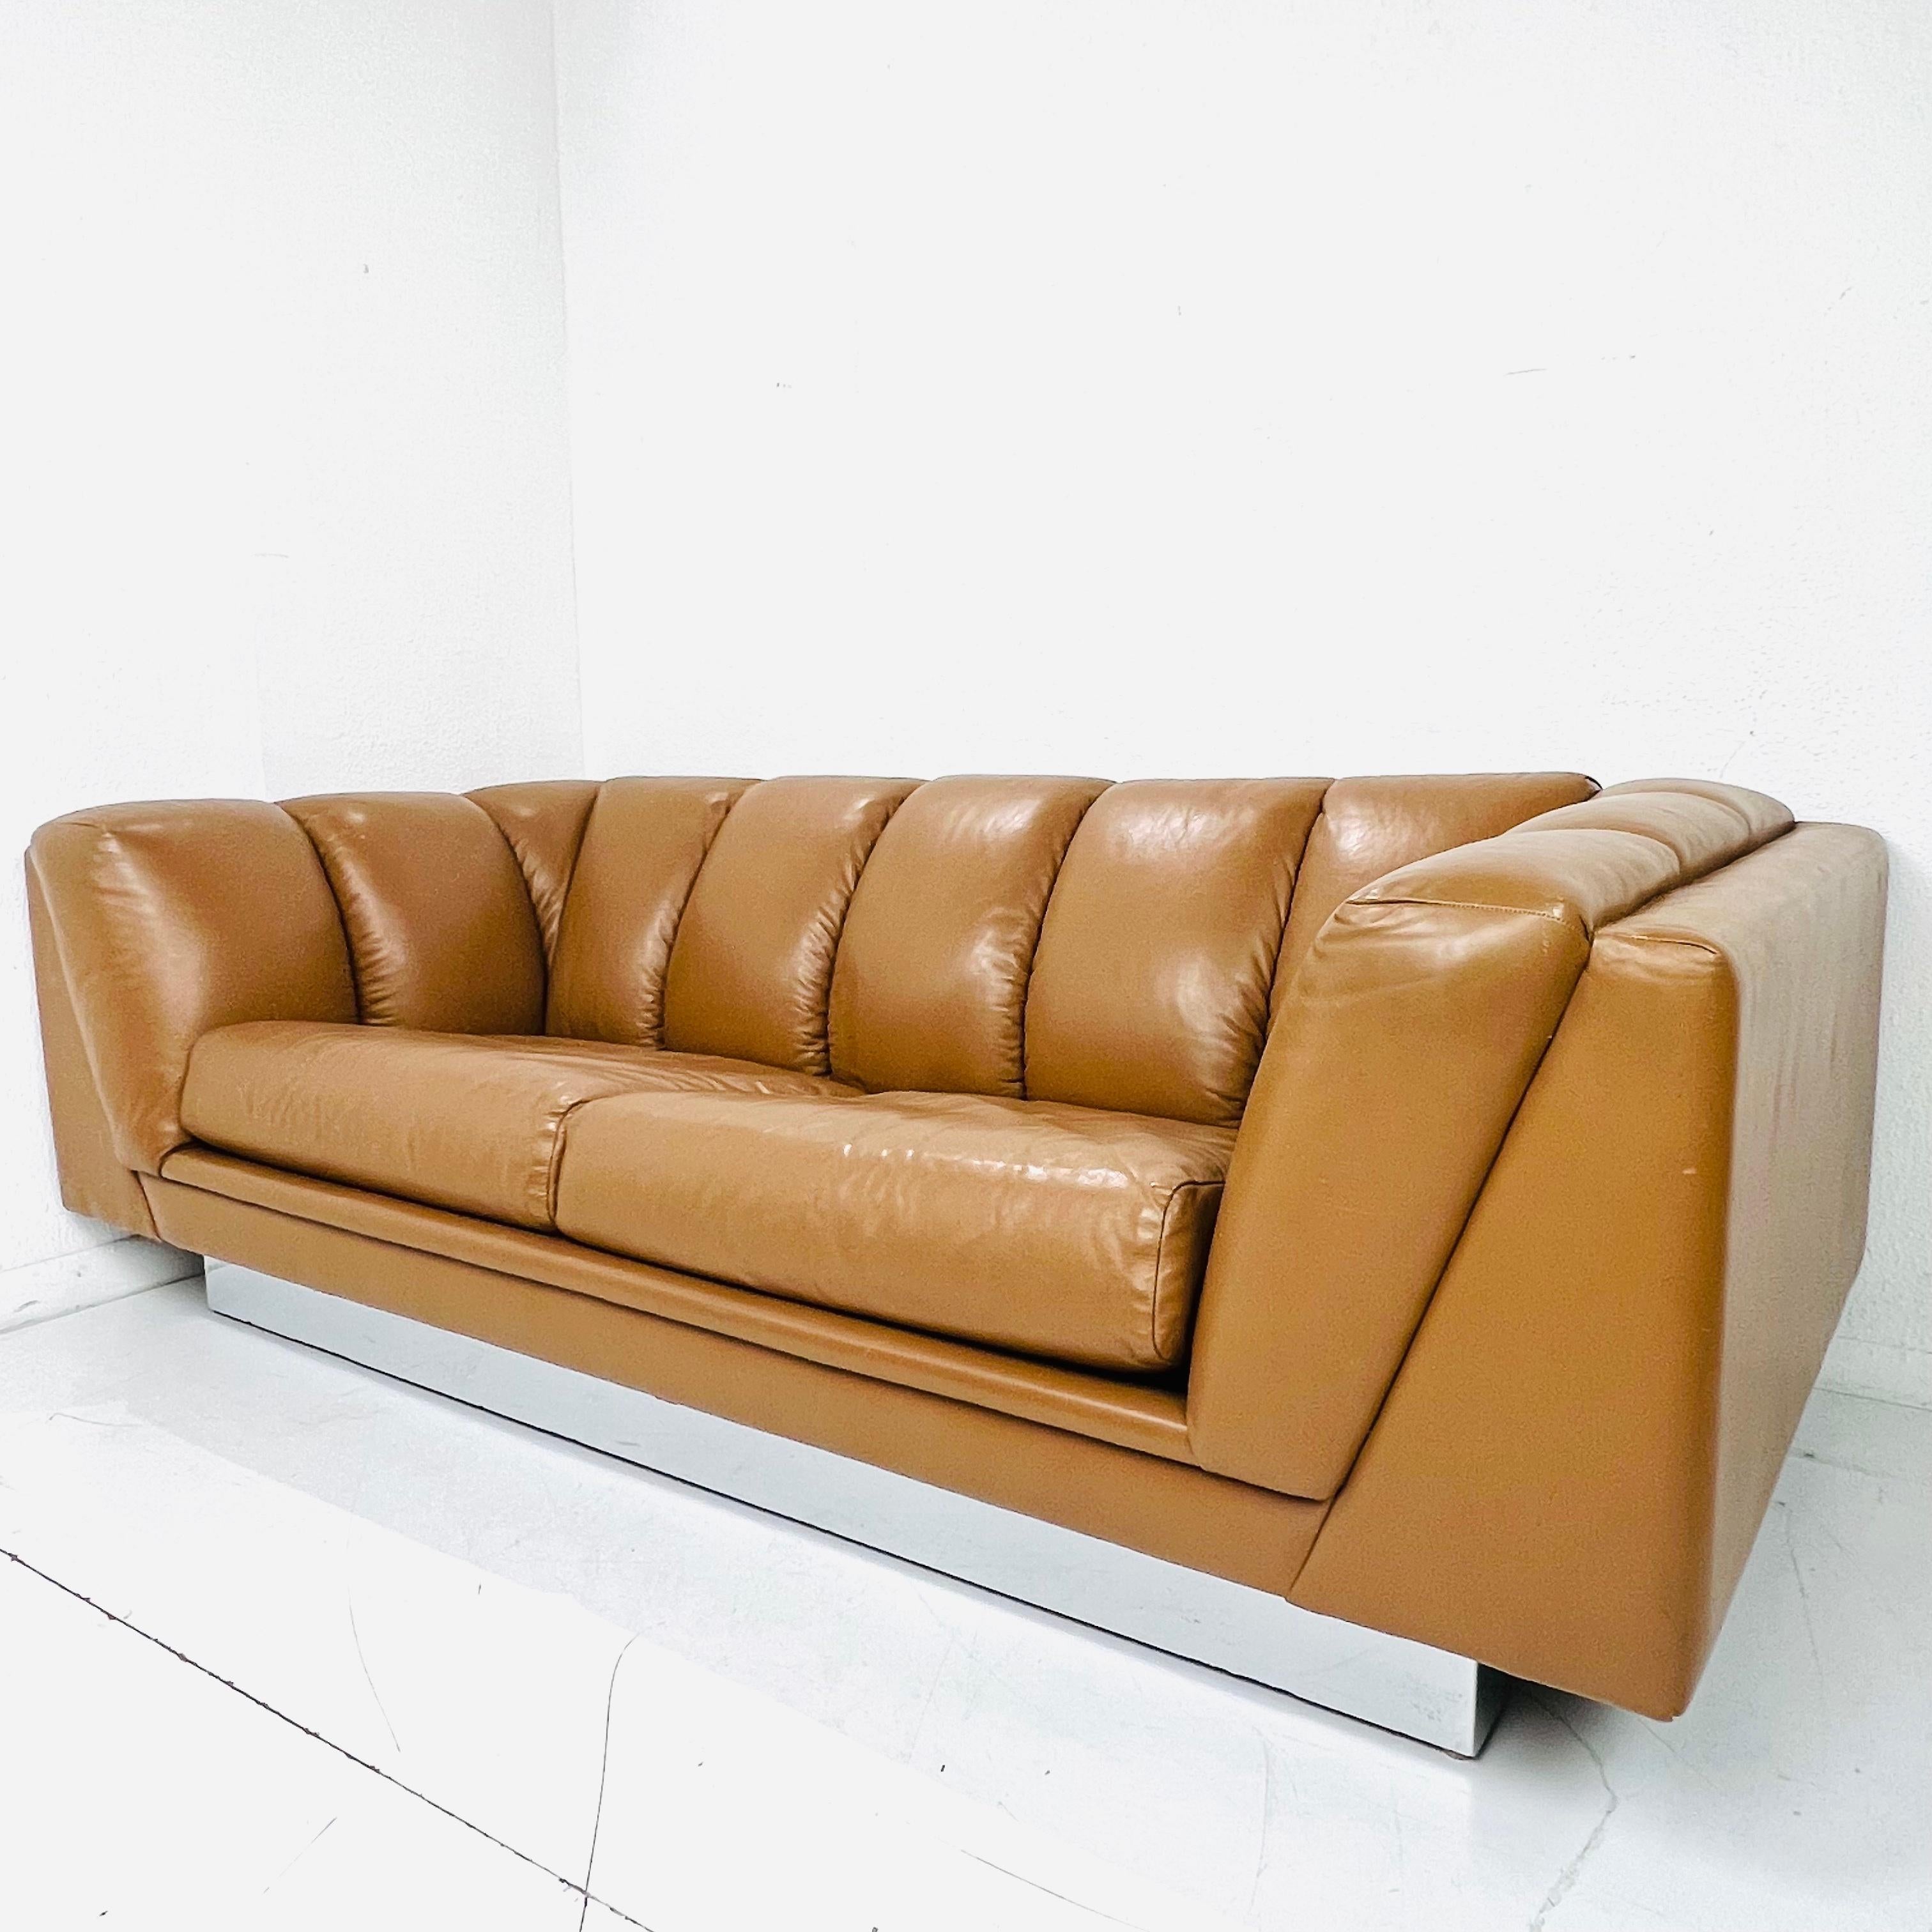 Hübsches Ledersofa mit Chromgestell von Metropolitan Furniture aus San Francisco, CA, um 1970. Das Sofa verfügt über einen polierten, verspiegelten Chromsockel, der dem Sofa einen schwebenden Effekt verleiht. Die Kissen und der Rahmen sind mit dem